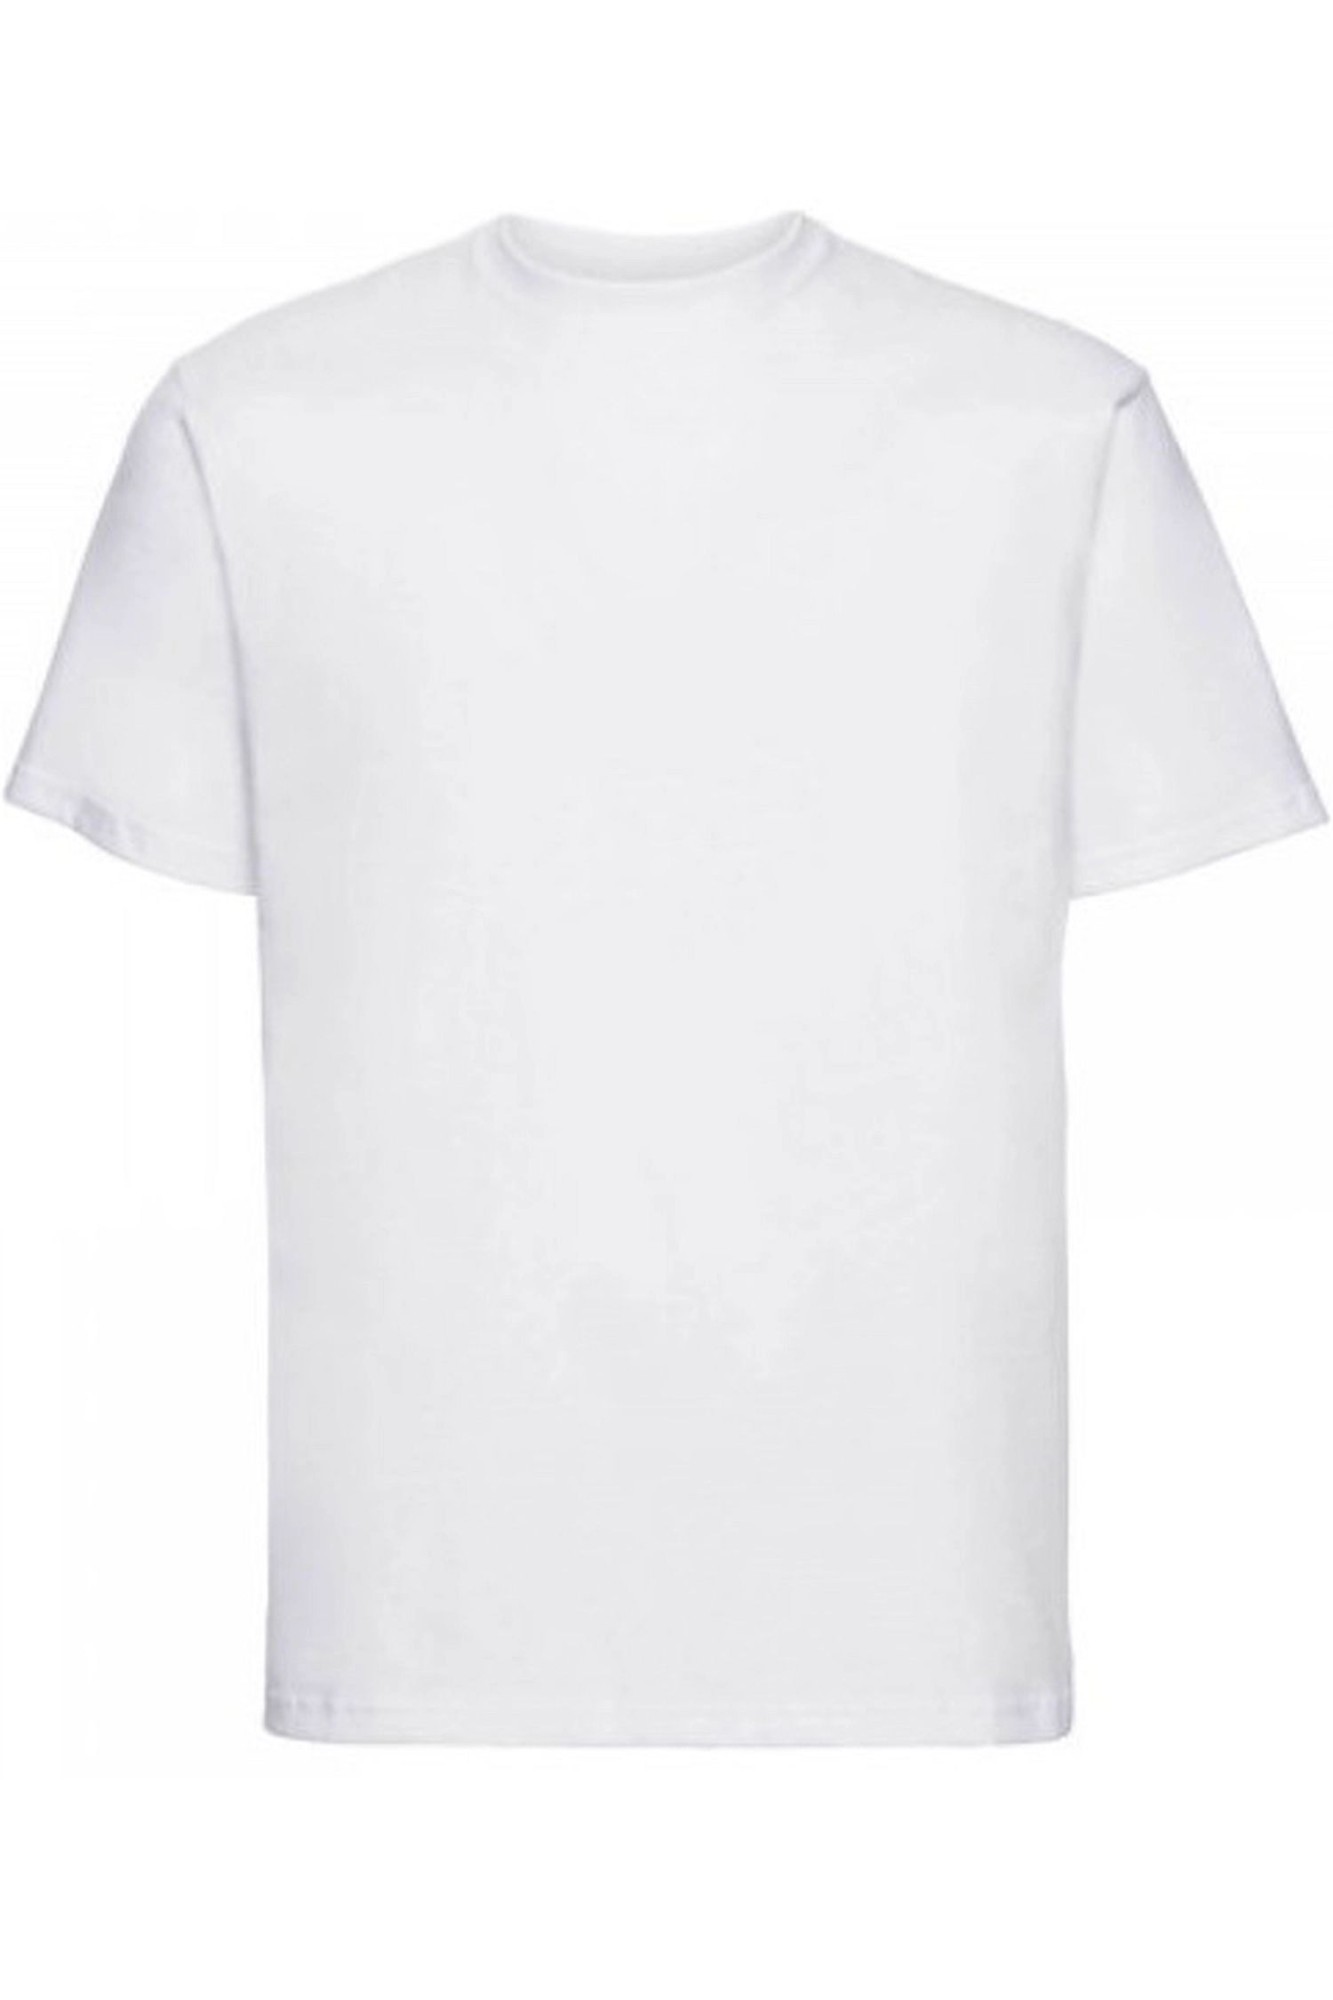 Pánské tričko 002 white - NOVITI Bílá L